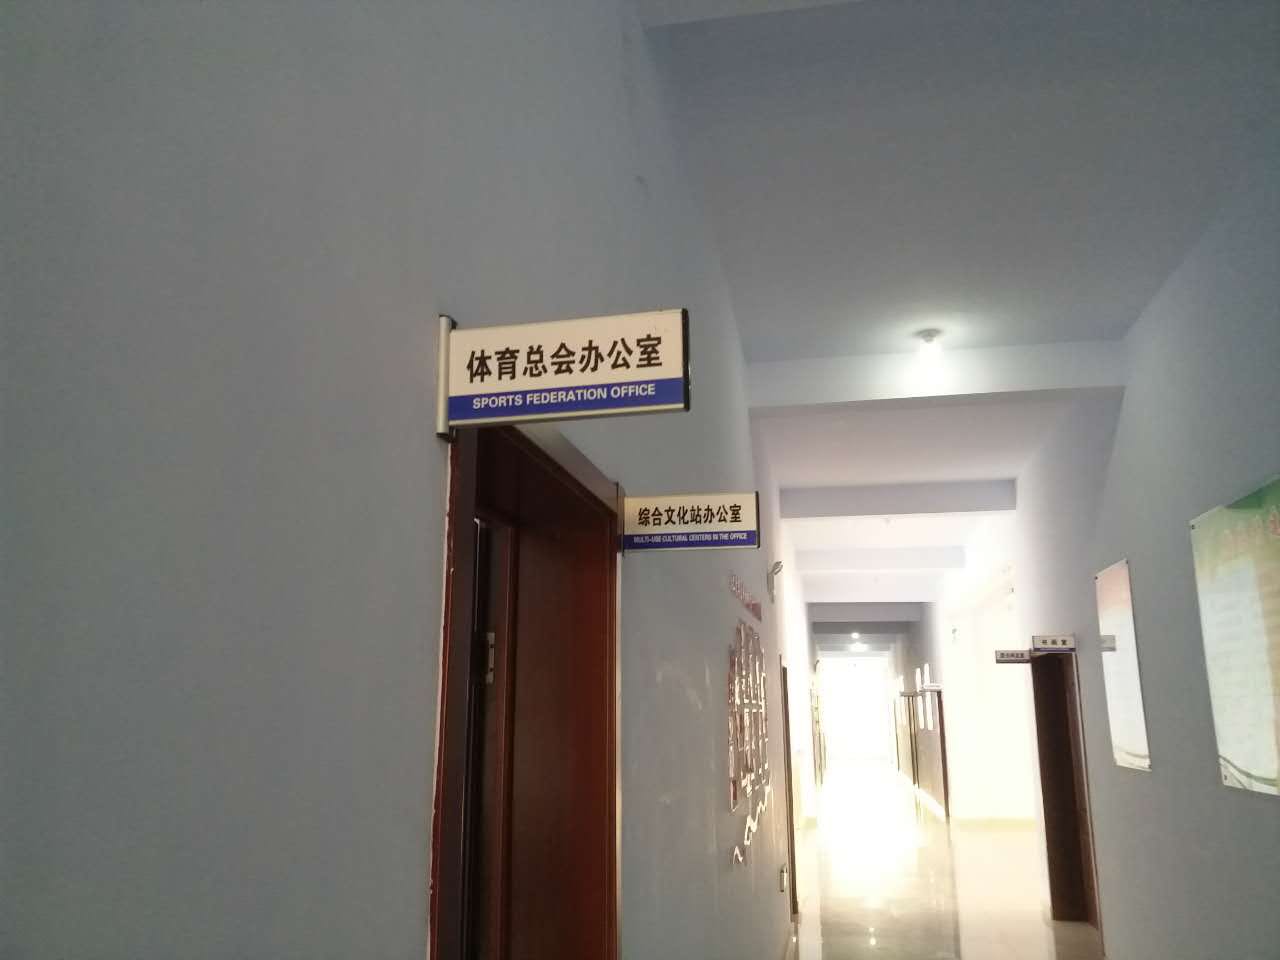 大王庄镇体育总会办公室.jpg